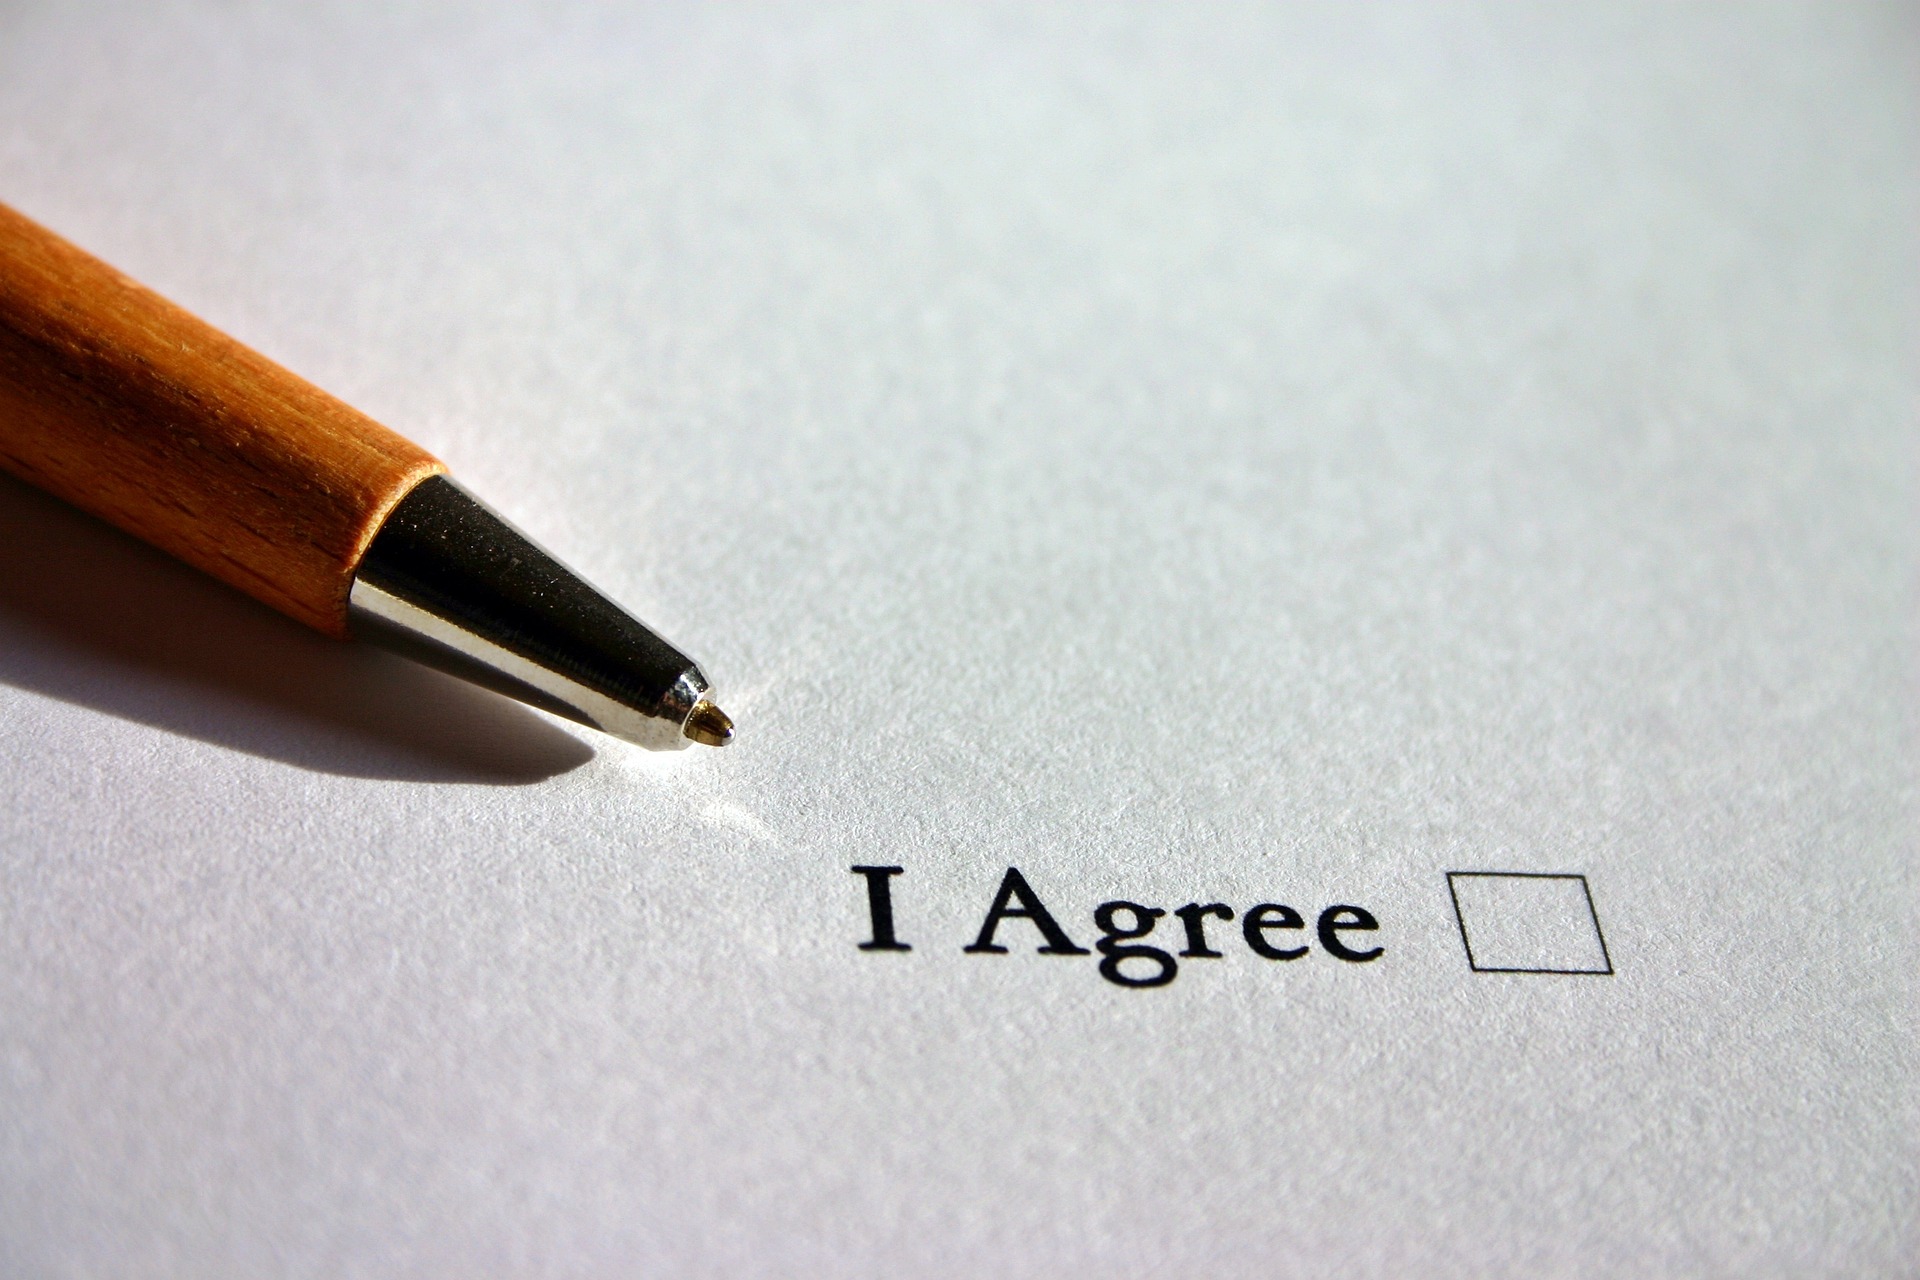 Umowa przedwstępna sprzedaży nieruchomości: co warto wiedzieć przed podpisaniem?